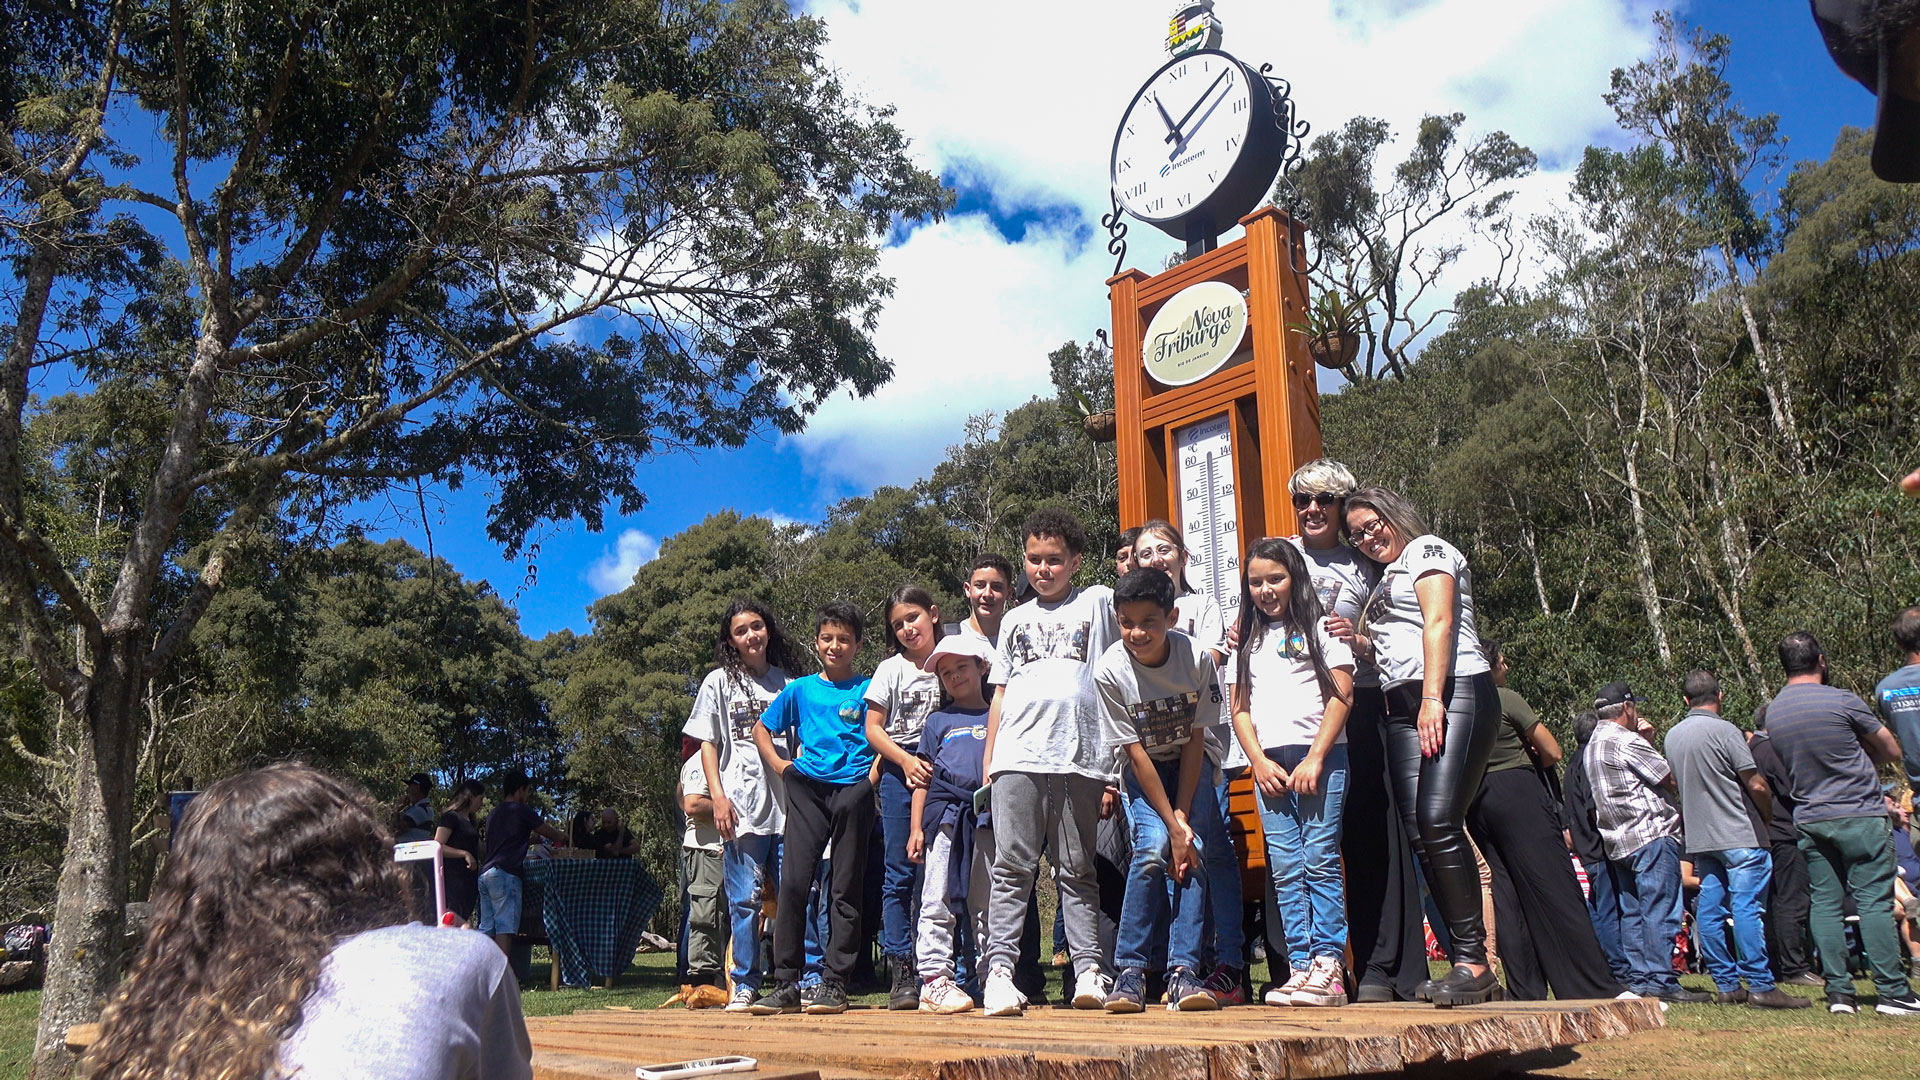 Circuito Turístico dos Três Picos é Lançado em Cerimônia Oficial.